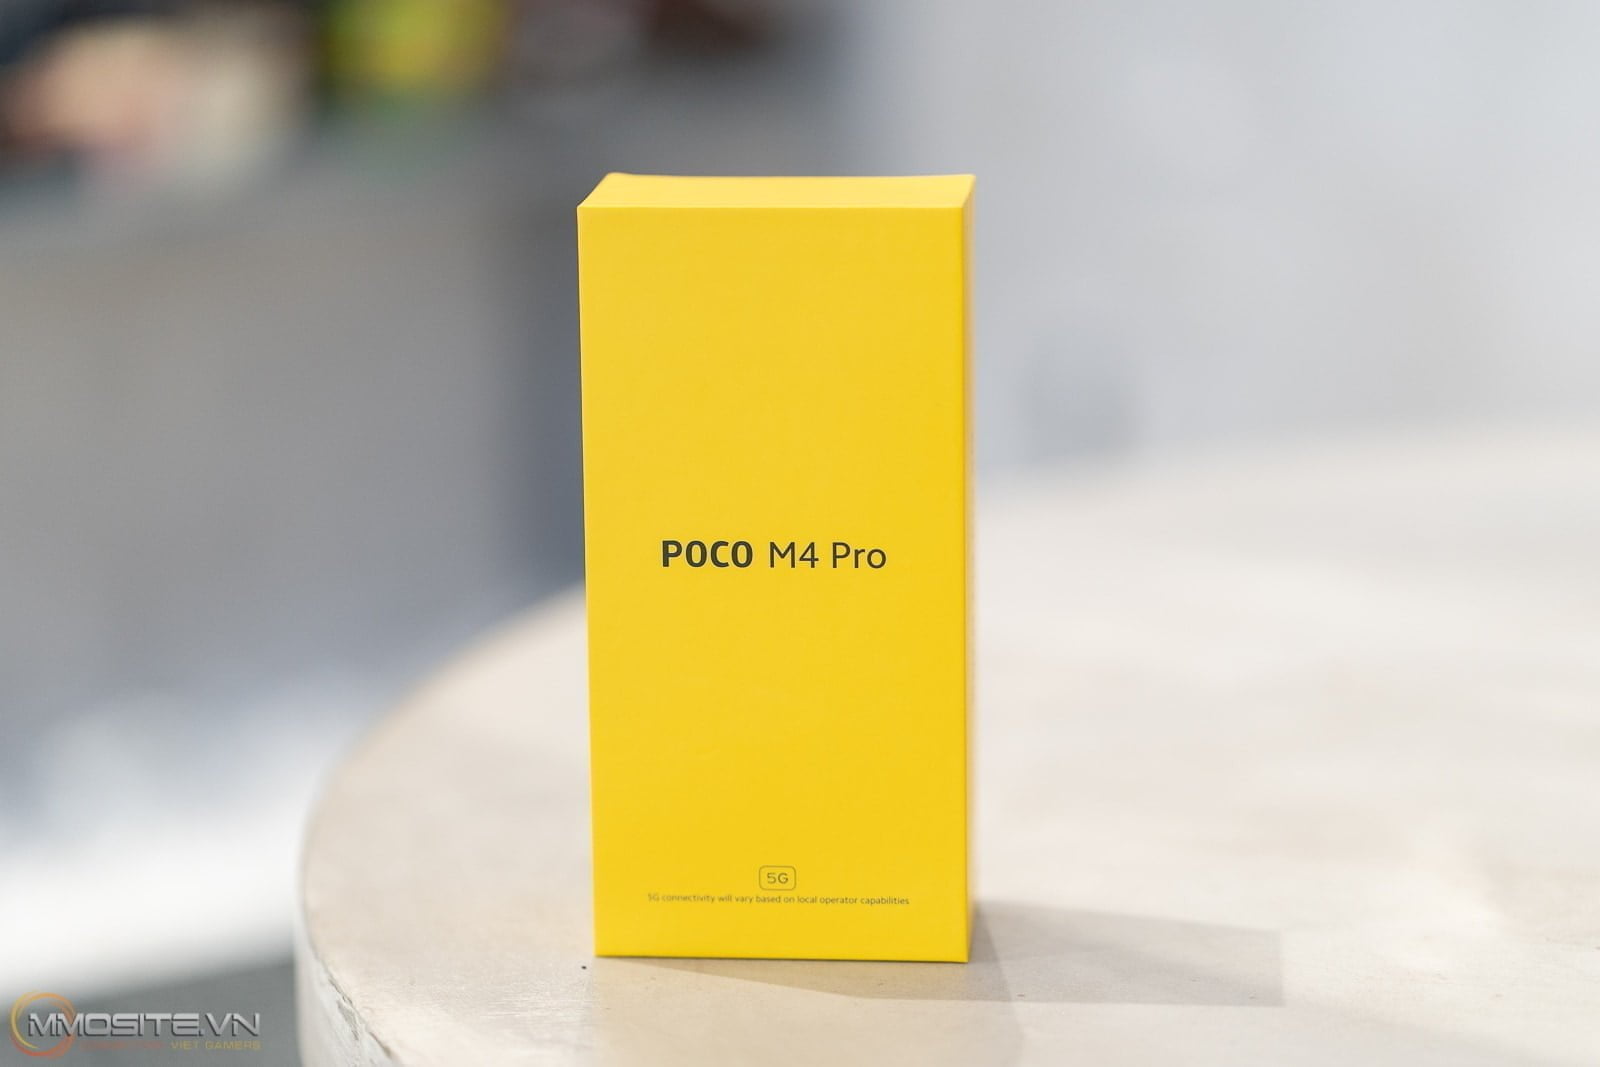 Trên tay POCO M4 Pro 5G - smartphone gaming 5G cấu hình mạnh mẽ giá siêu mềm